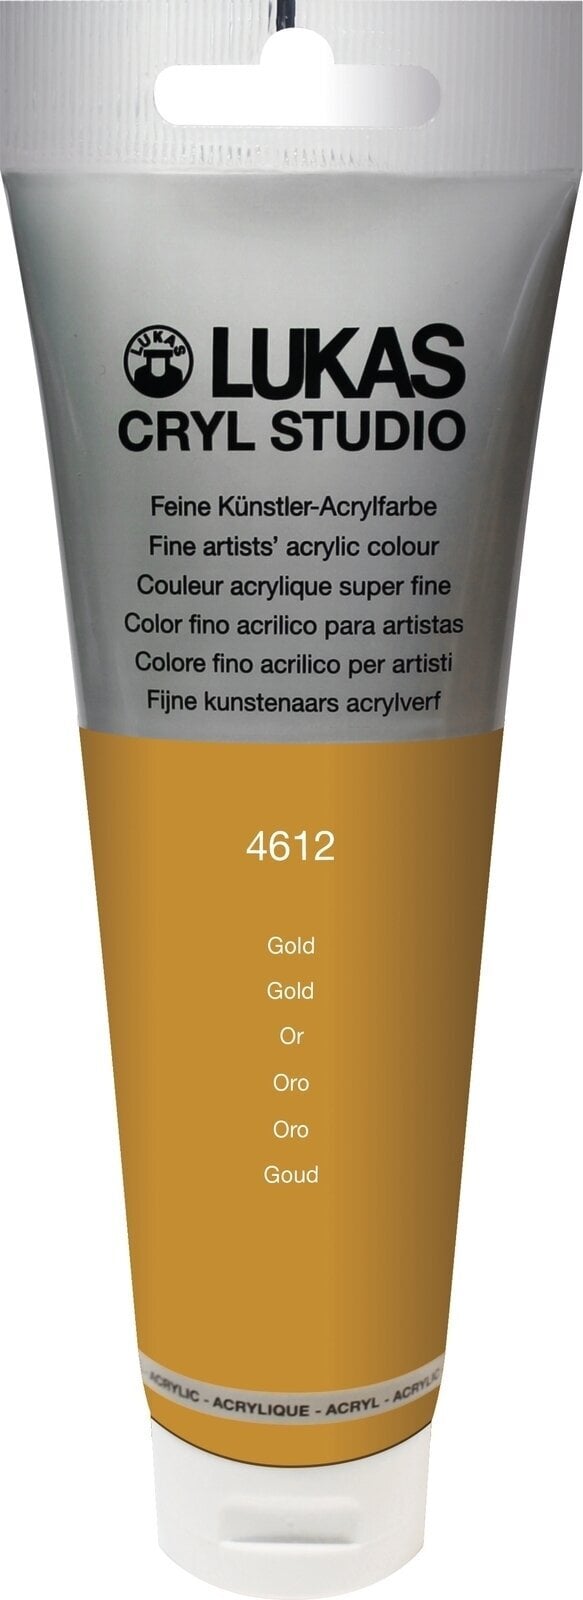 Akrylová farba Lukas Cryl Studio Acrylic Paint Plastic Tube Akrylová farba Gold 125 ml 1 ks